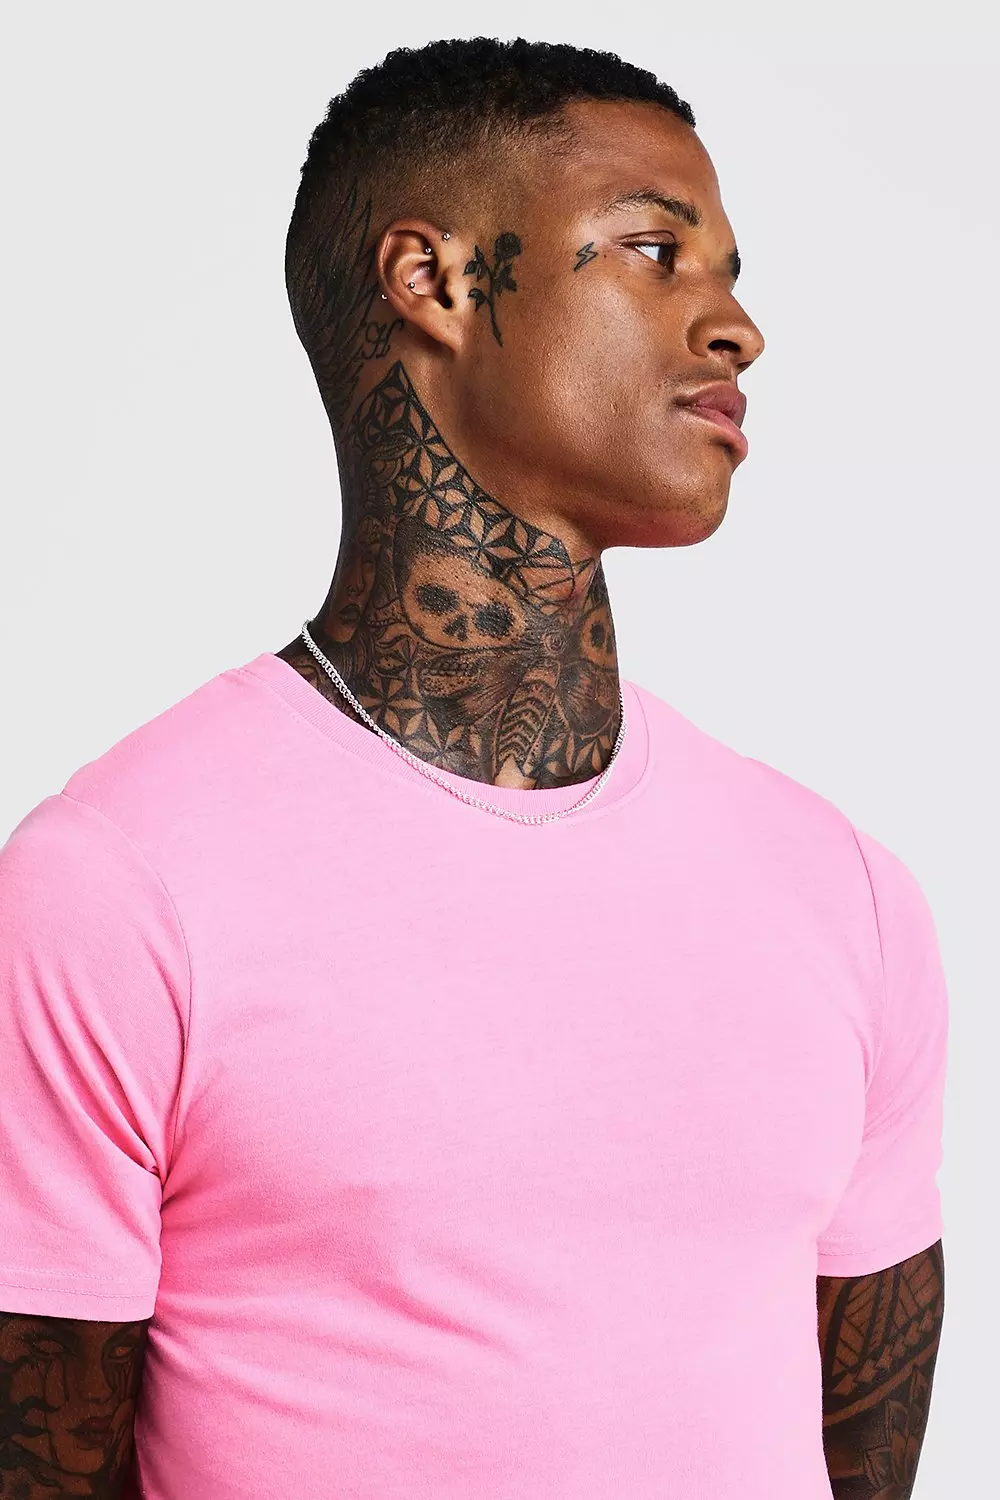 T-Shirt Men Rhinestone Pink Large Size 5XL New 2023 Spring